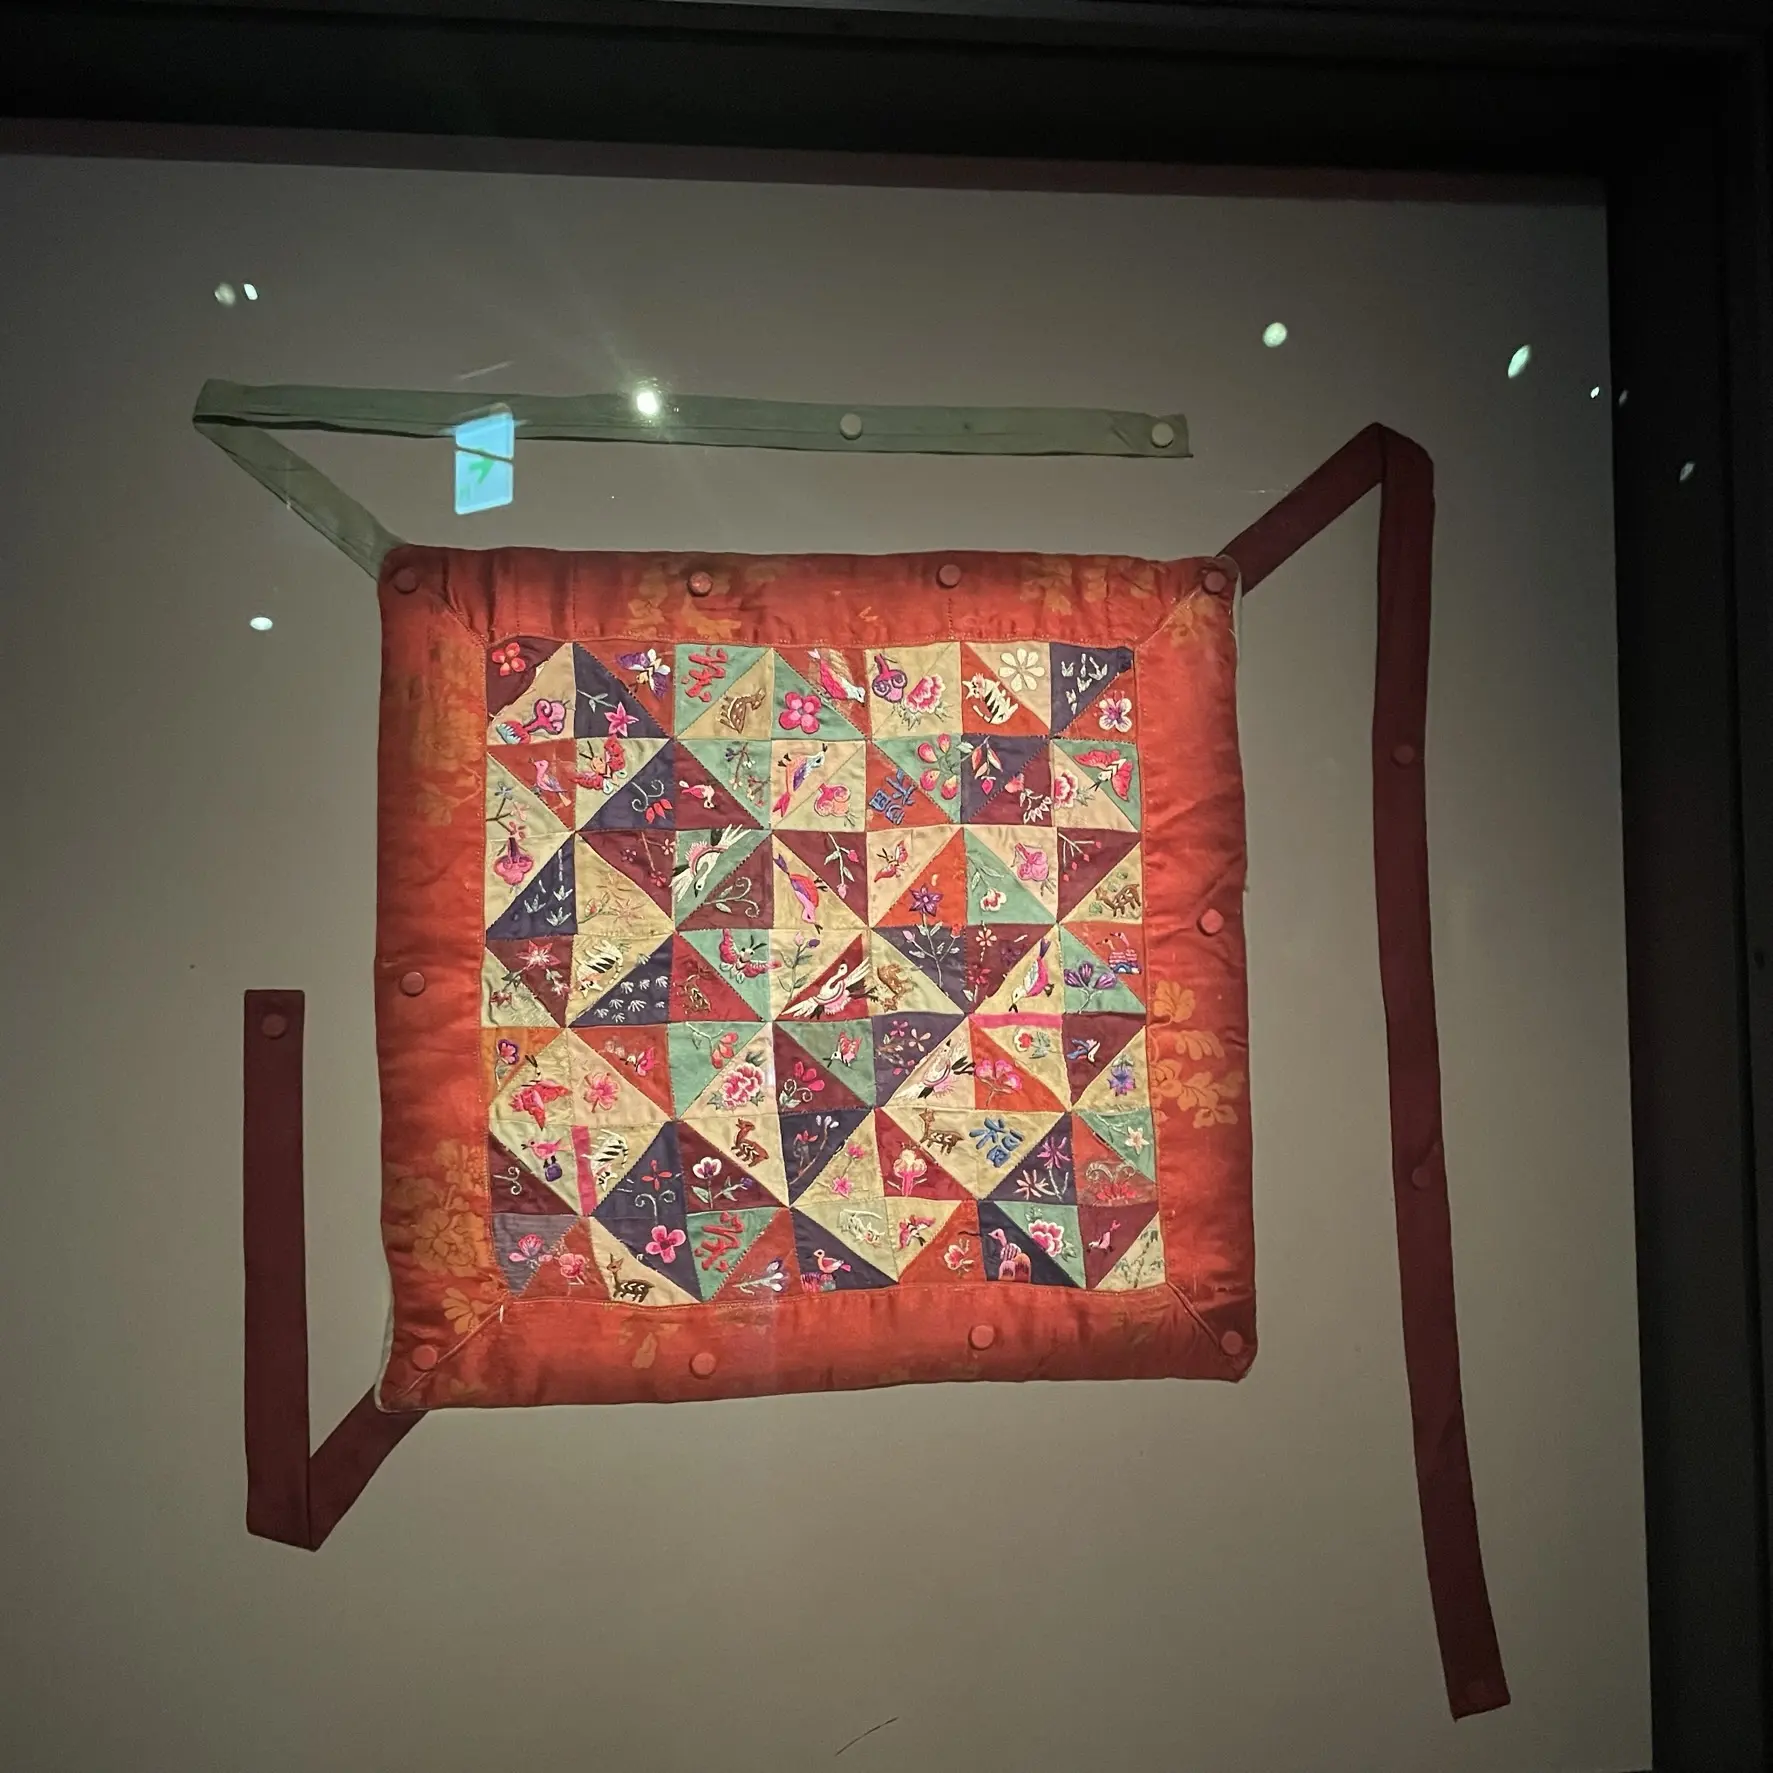 ソウル工芸博物館の展示、パッチワークのように布を縫い合わせ、さらに美しい刺繍を施されている作品